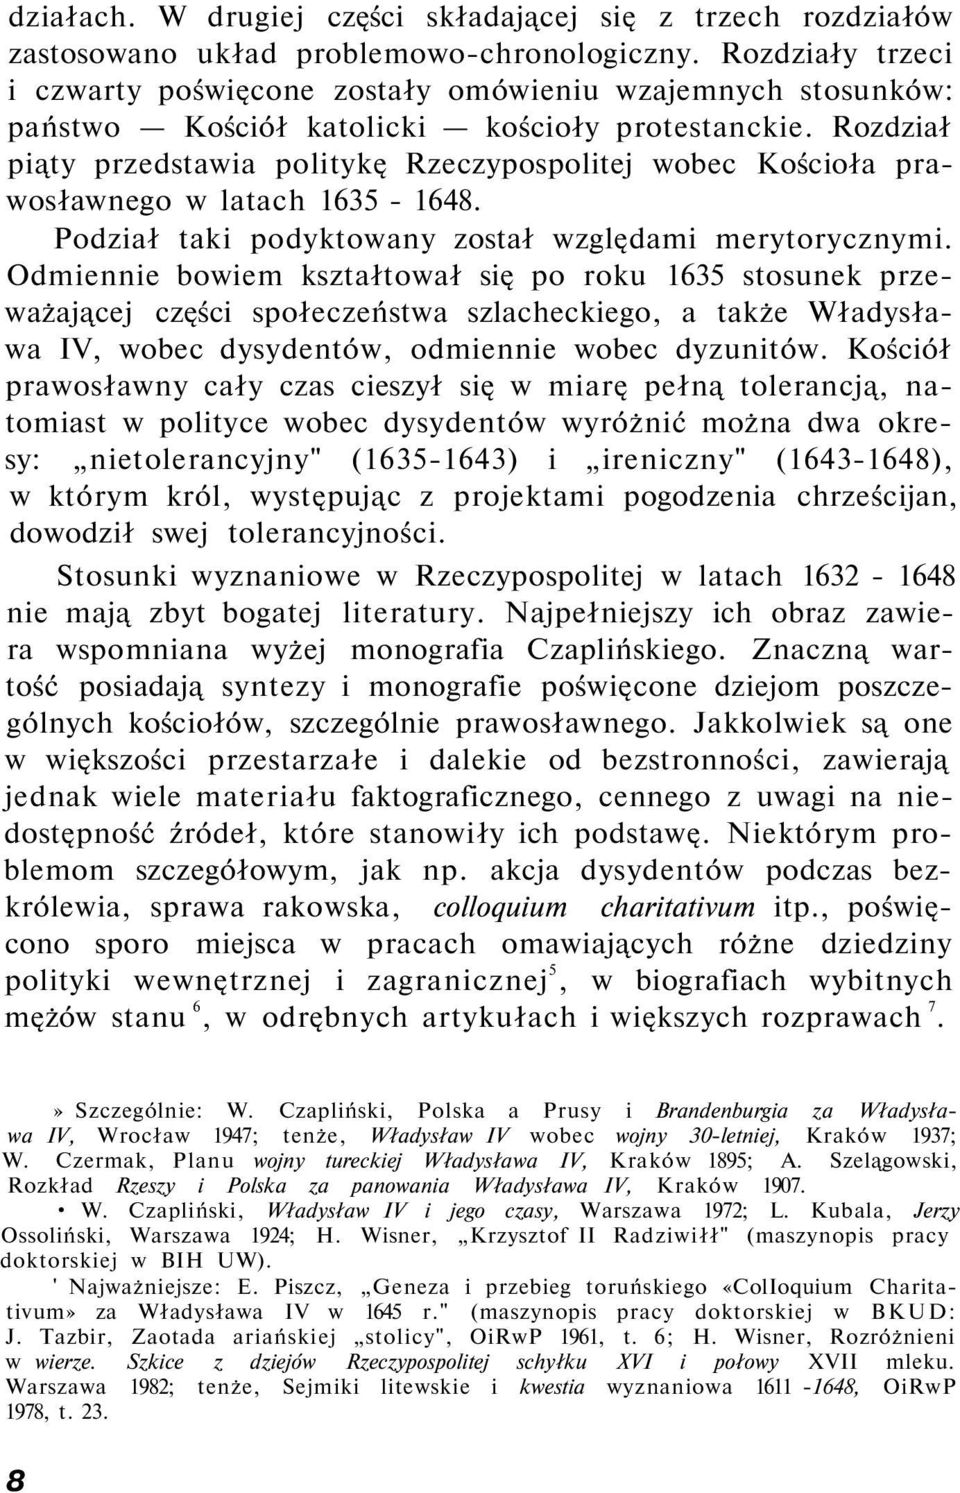 Rozdział piąty przedstawia politykę Rzeczypospolitej wobec Kościoła prawosławnego w latach 1635-1648. Podział taki podyktowany został względami merytorycznymi.